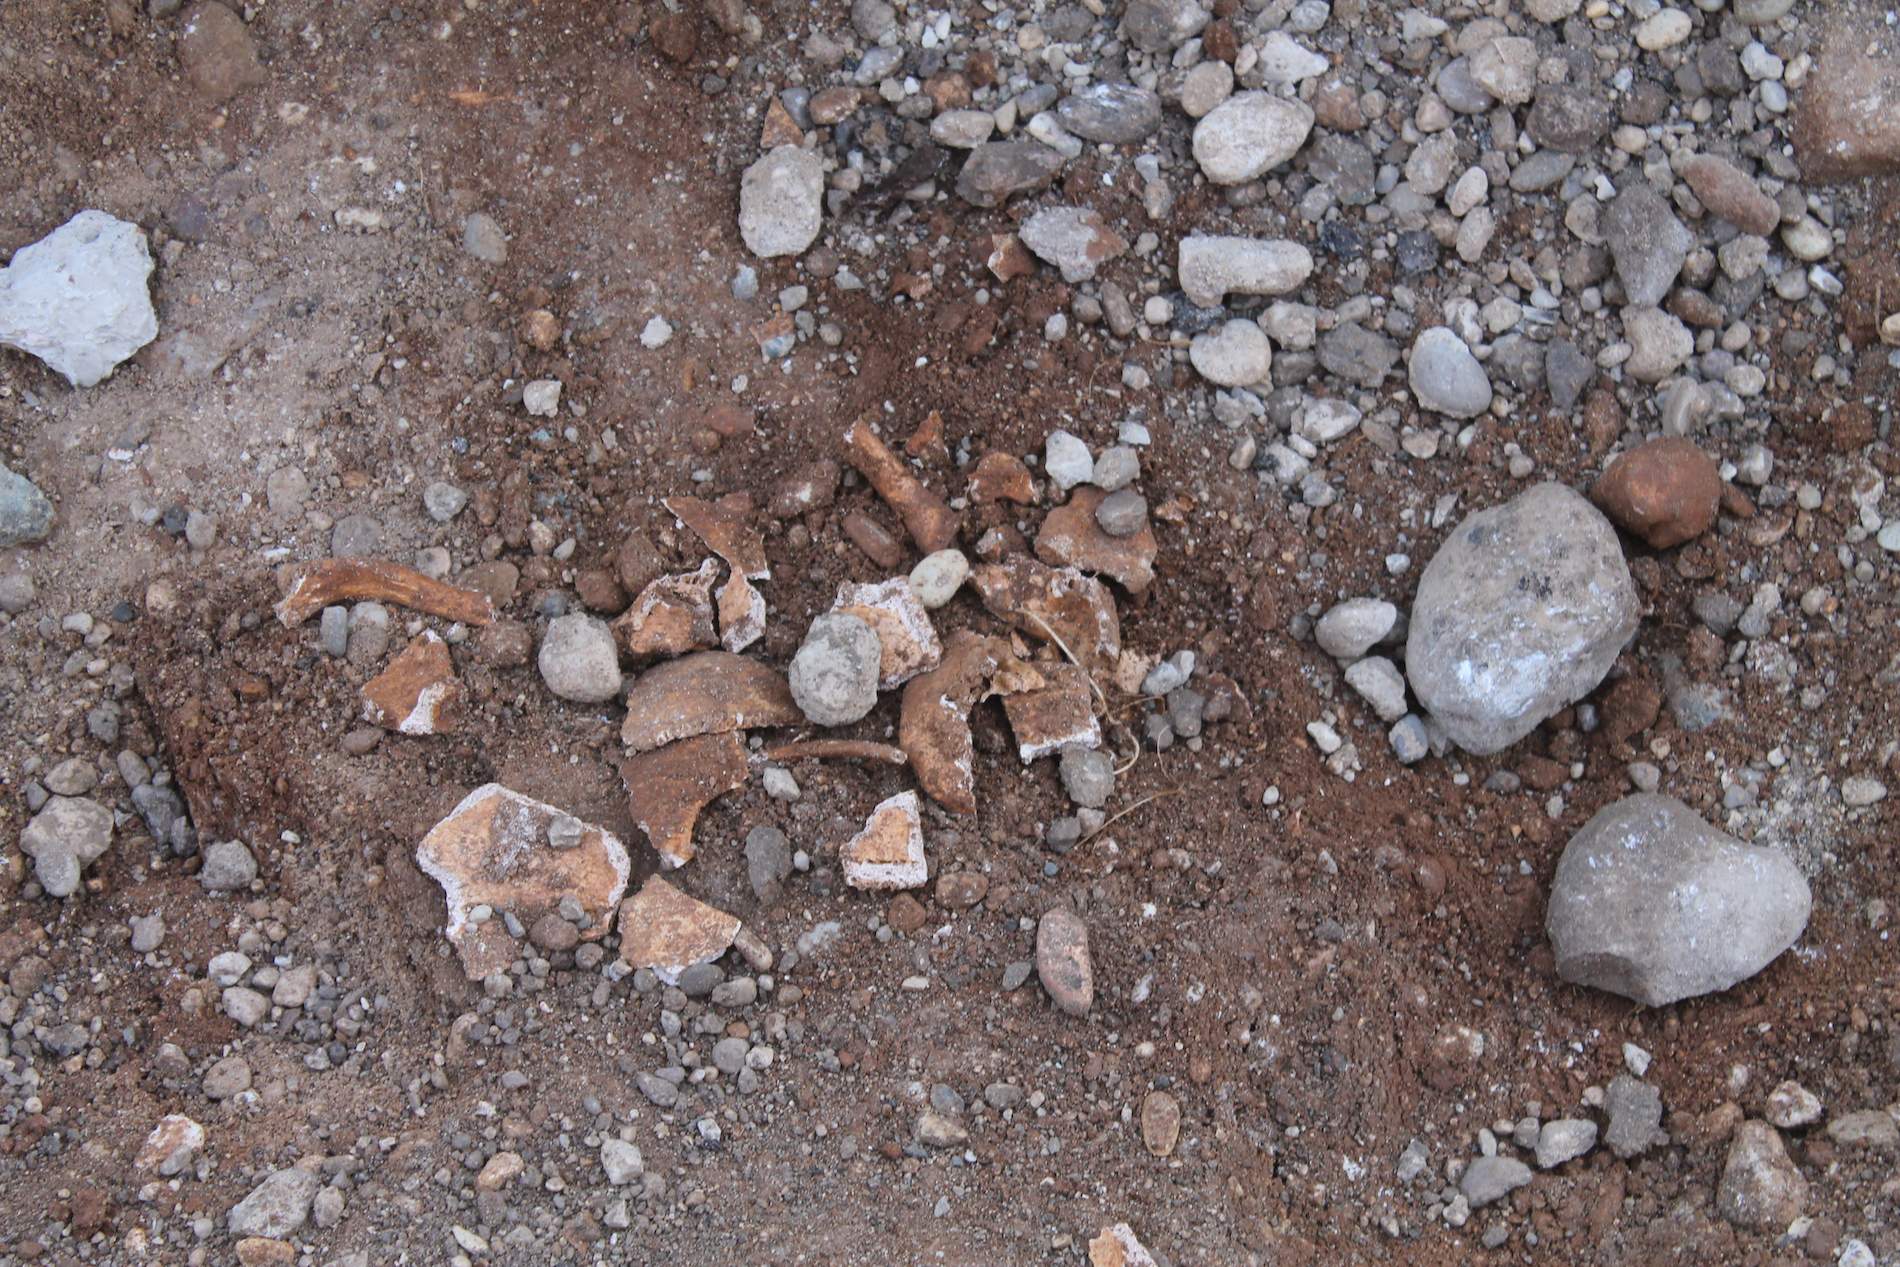 Ekshumacija -  Lakišića harem - Islamska zajednica od gradonačelnika Mostara ponovo zatražila temeljitu ekshumaciju posmrtnih ostataka s lokaliteta Lakišića harema